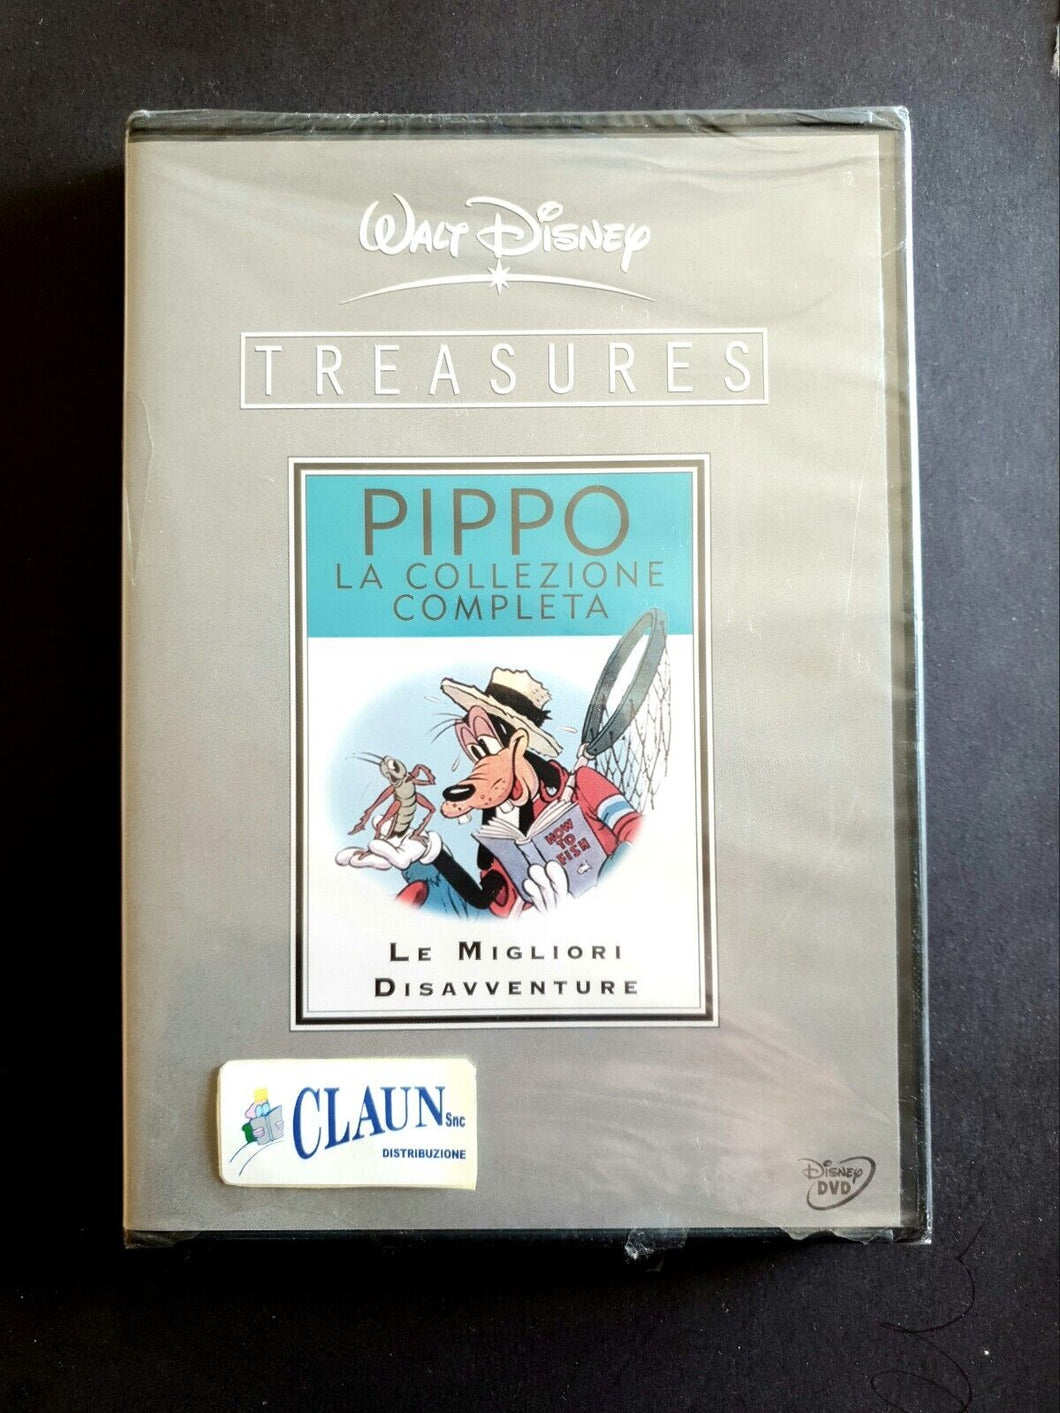 Walt Disney Treasures - Pippo La collezione completa 2 Dischi DVD Nuovo Sigilla